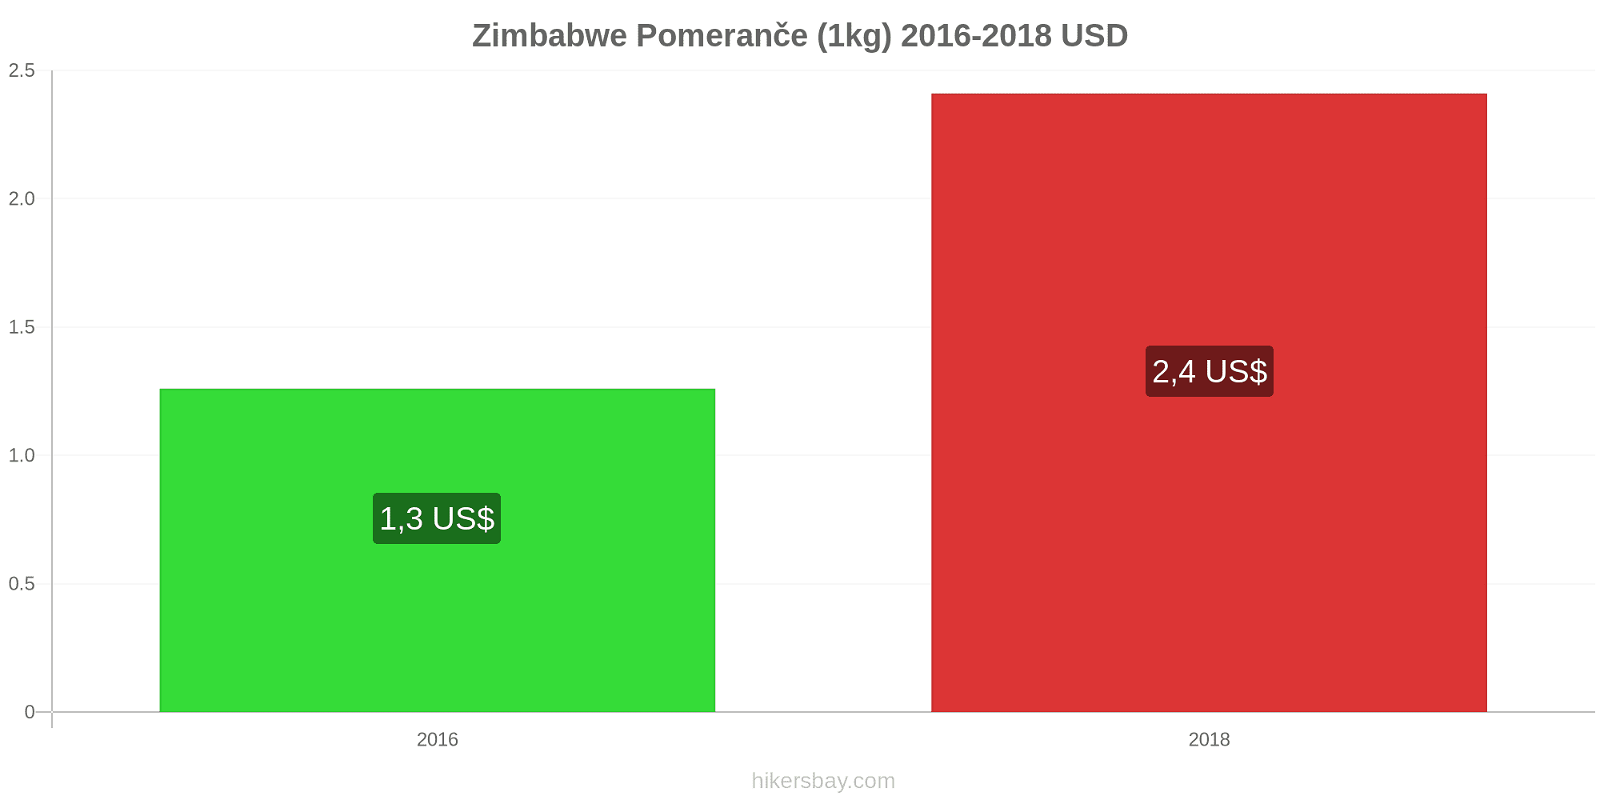 Zimbabwe změny cen Pomeranče (1kg) hikersbay.com